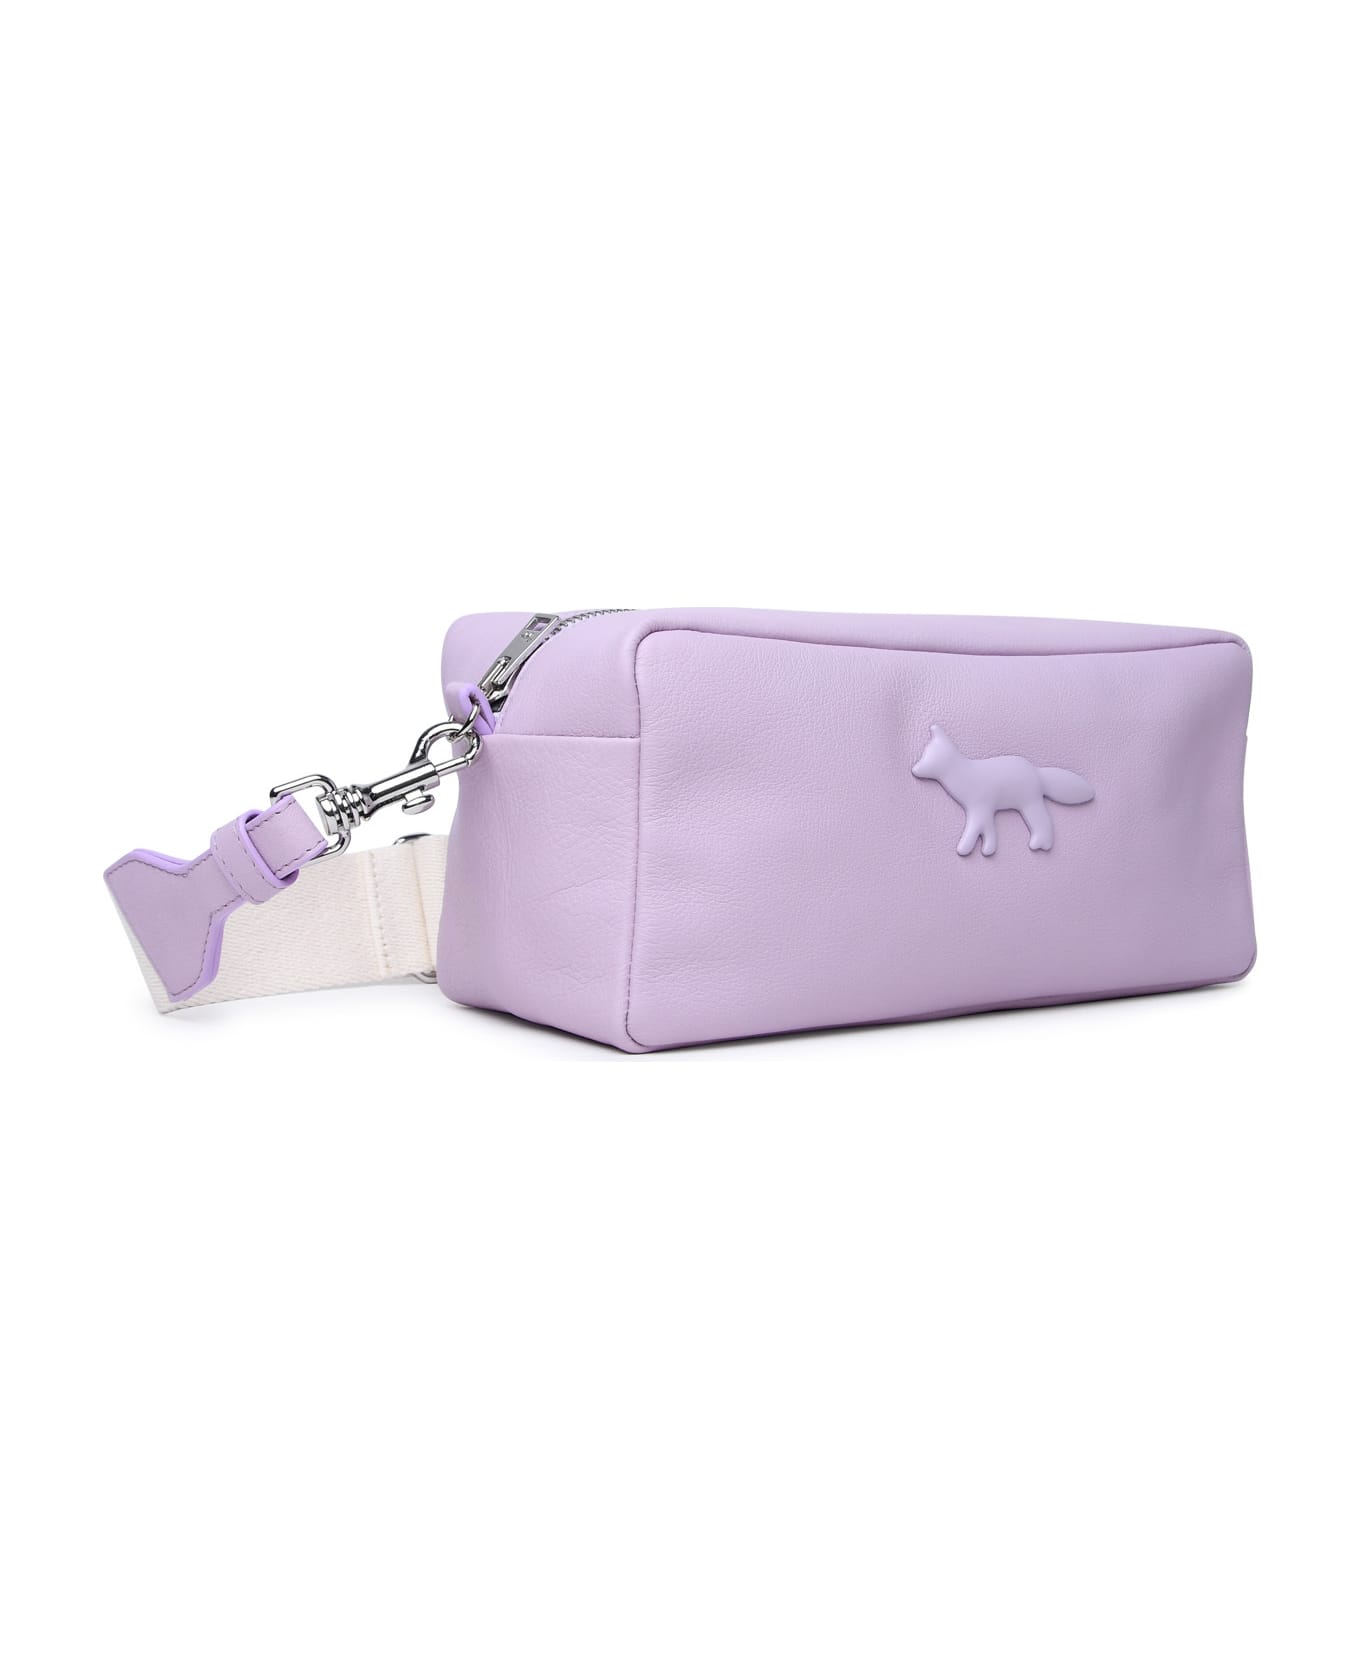 Maison Kitsuné 'cloud' Lilac Leather Bag - Liliac